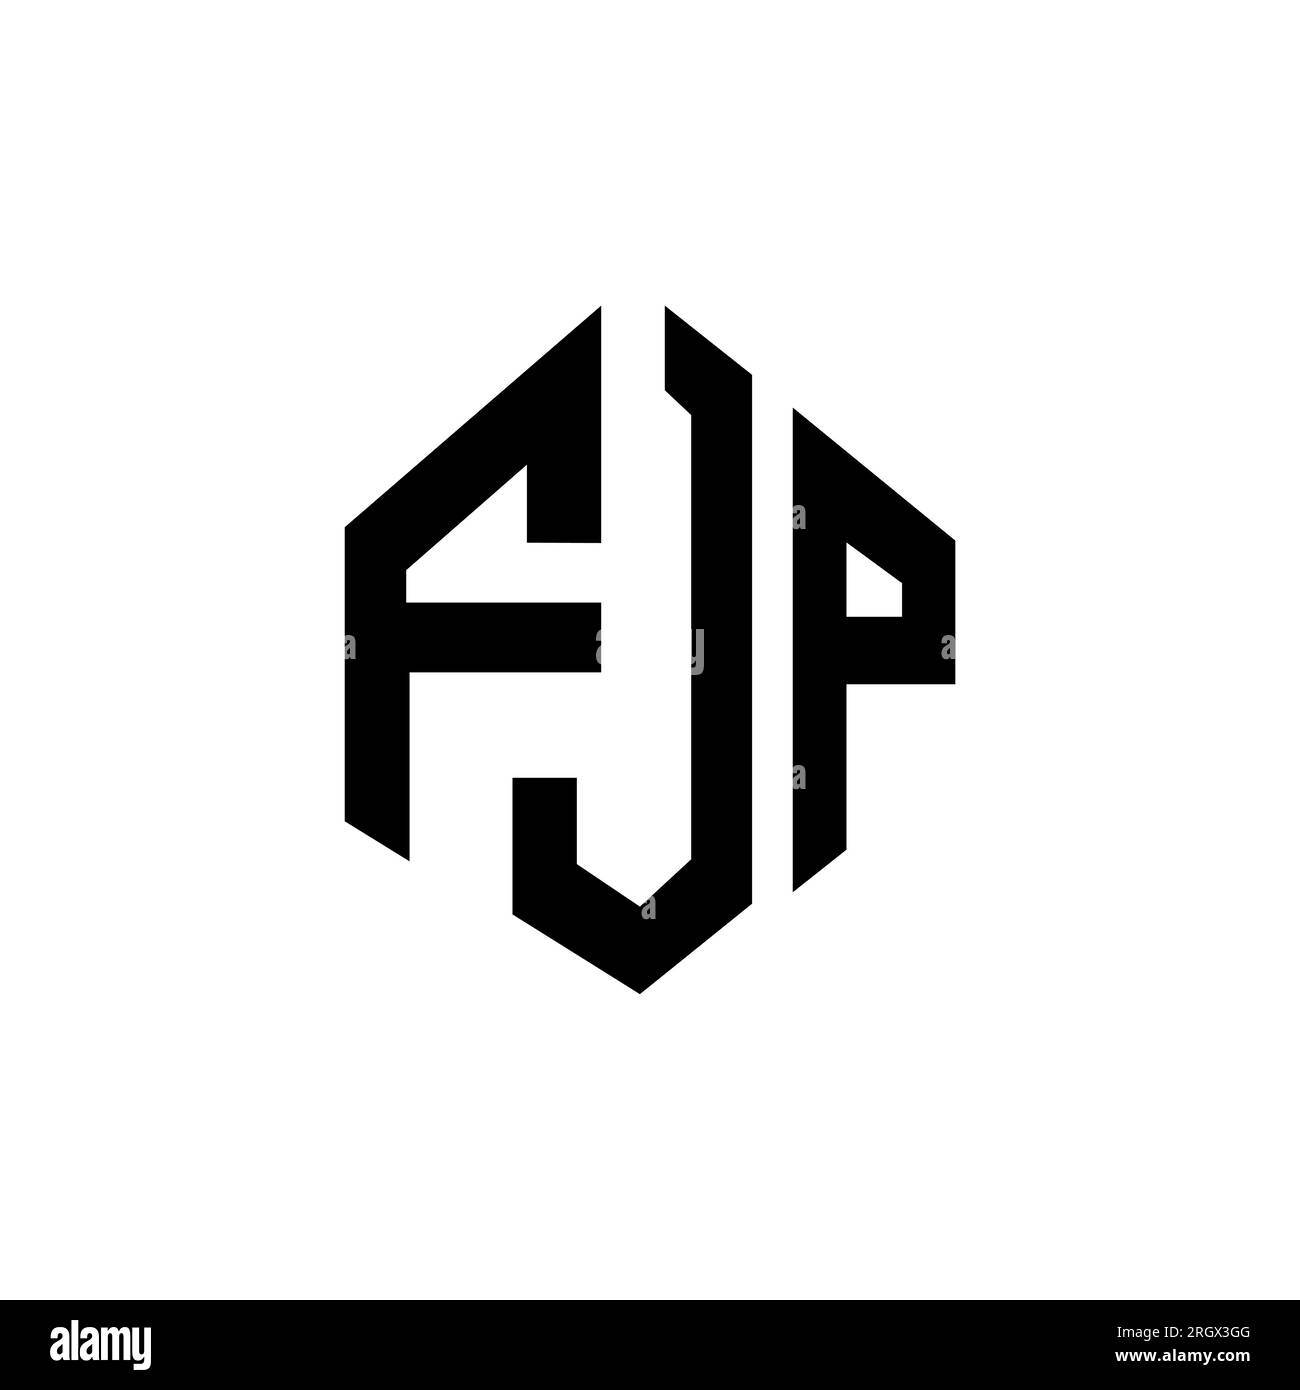 Logo de Fjp Renovation, société de travaux en Construction, murs, cloisons, plafonds en plaques de plâtre